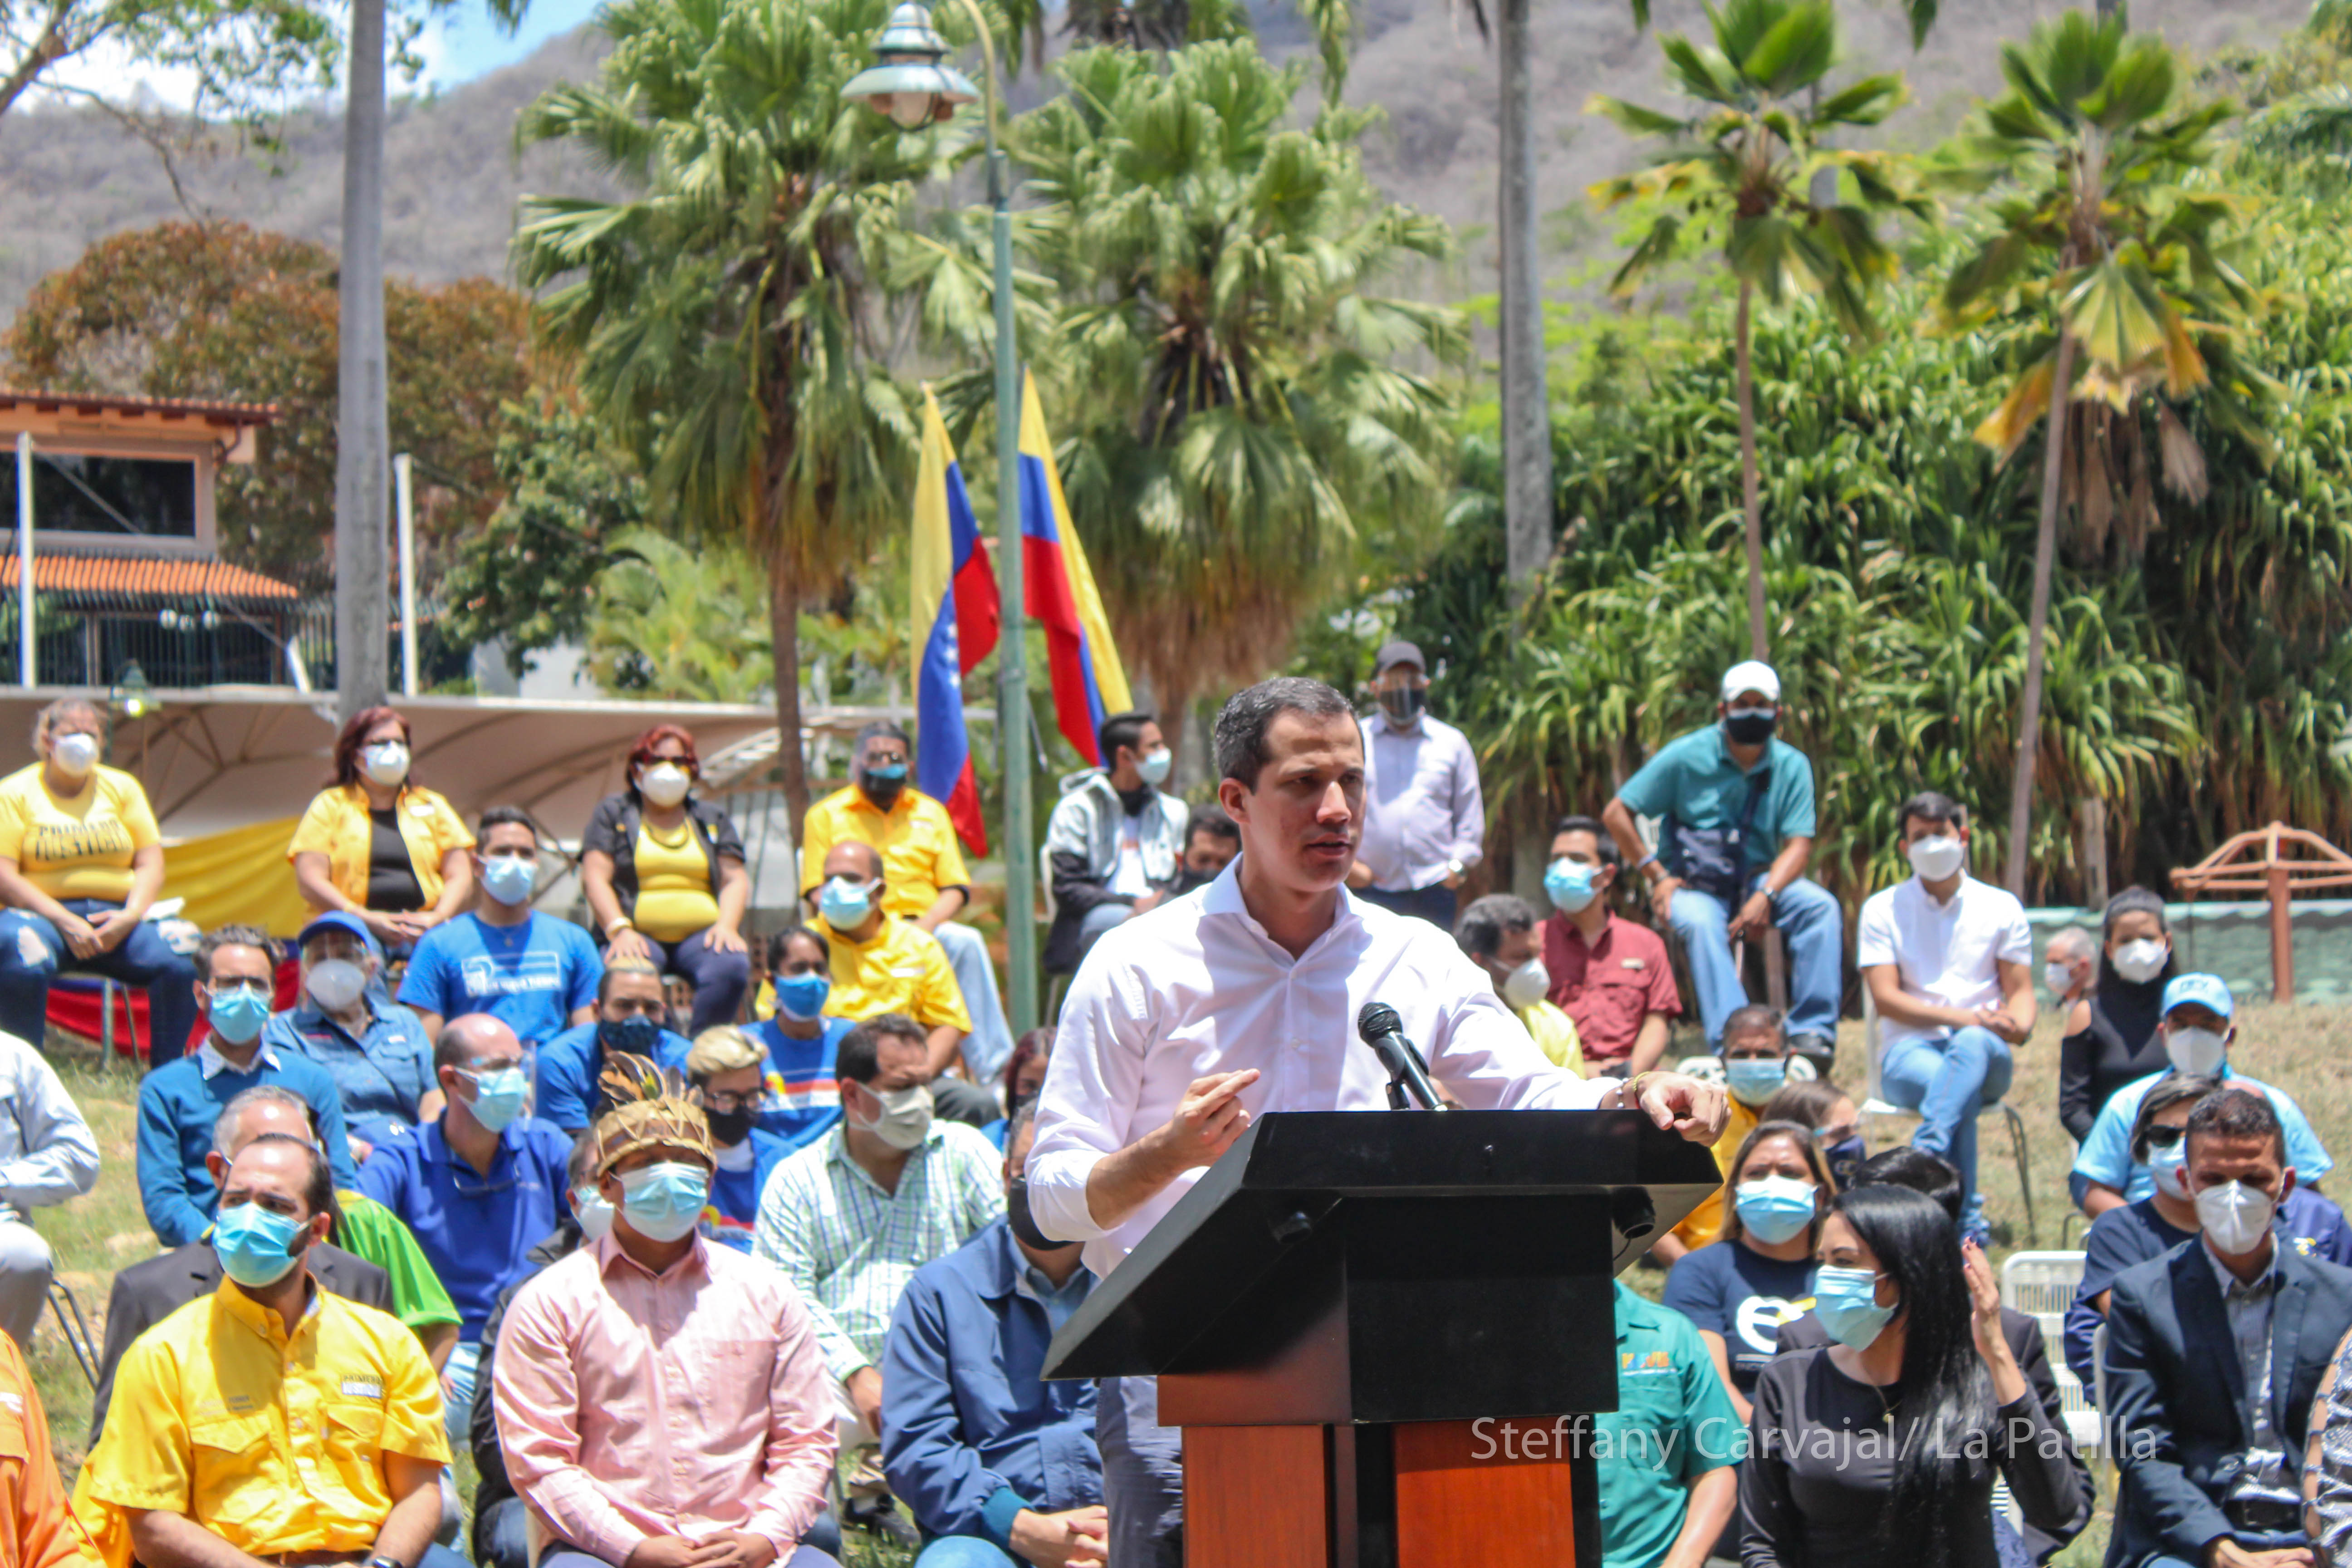 Conozca el manifiesto de la plataforma unitaria entre partidos y sociedad civil, presentado por Guaidó